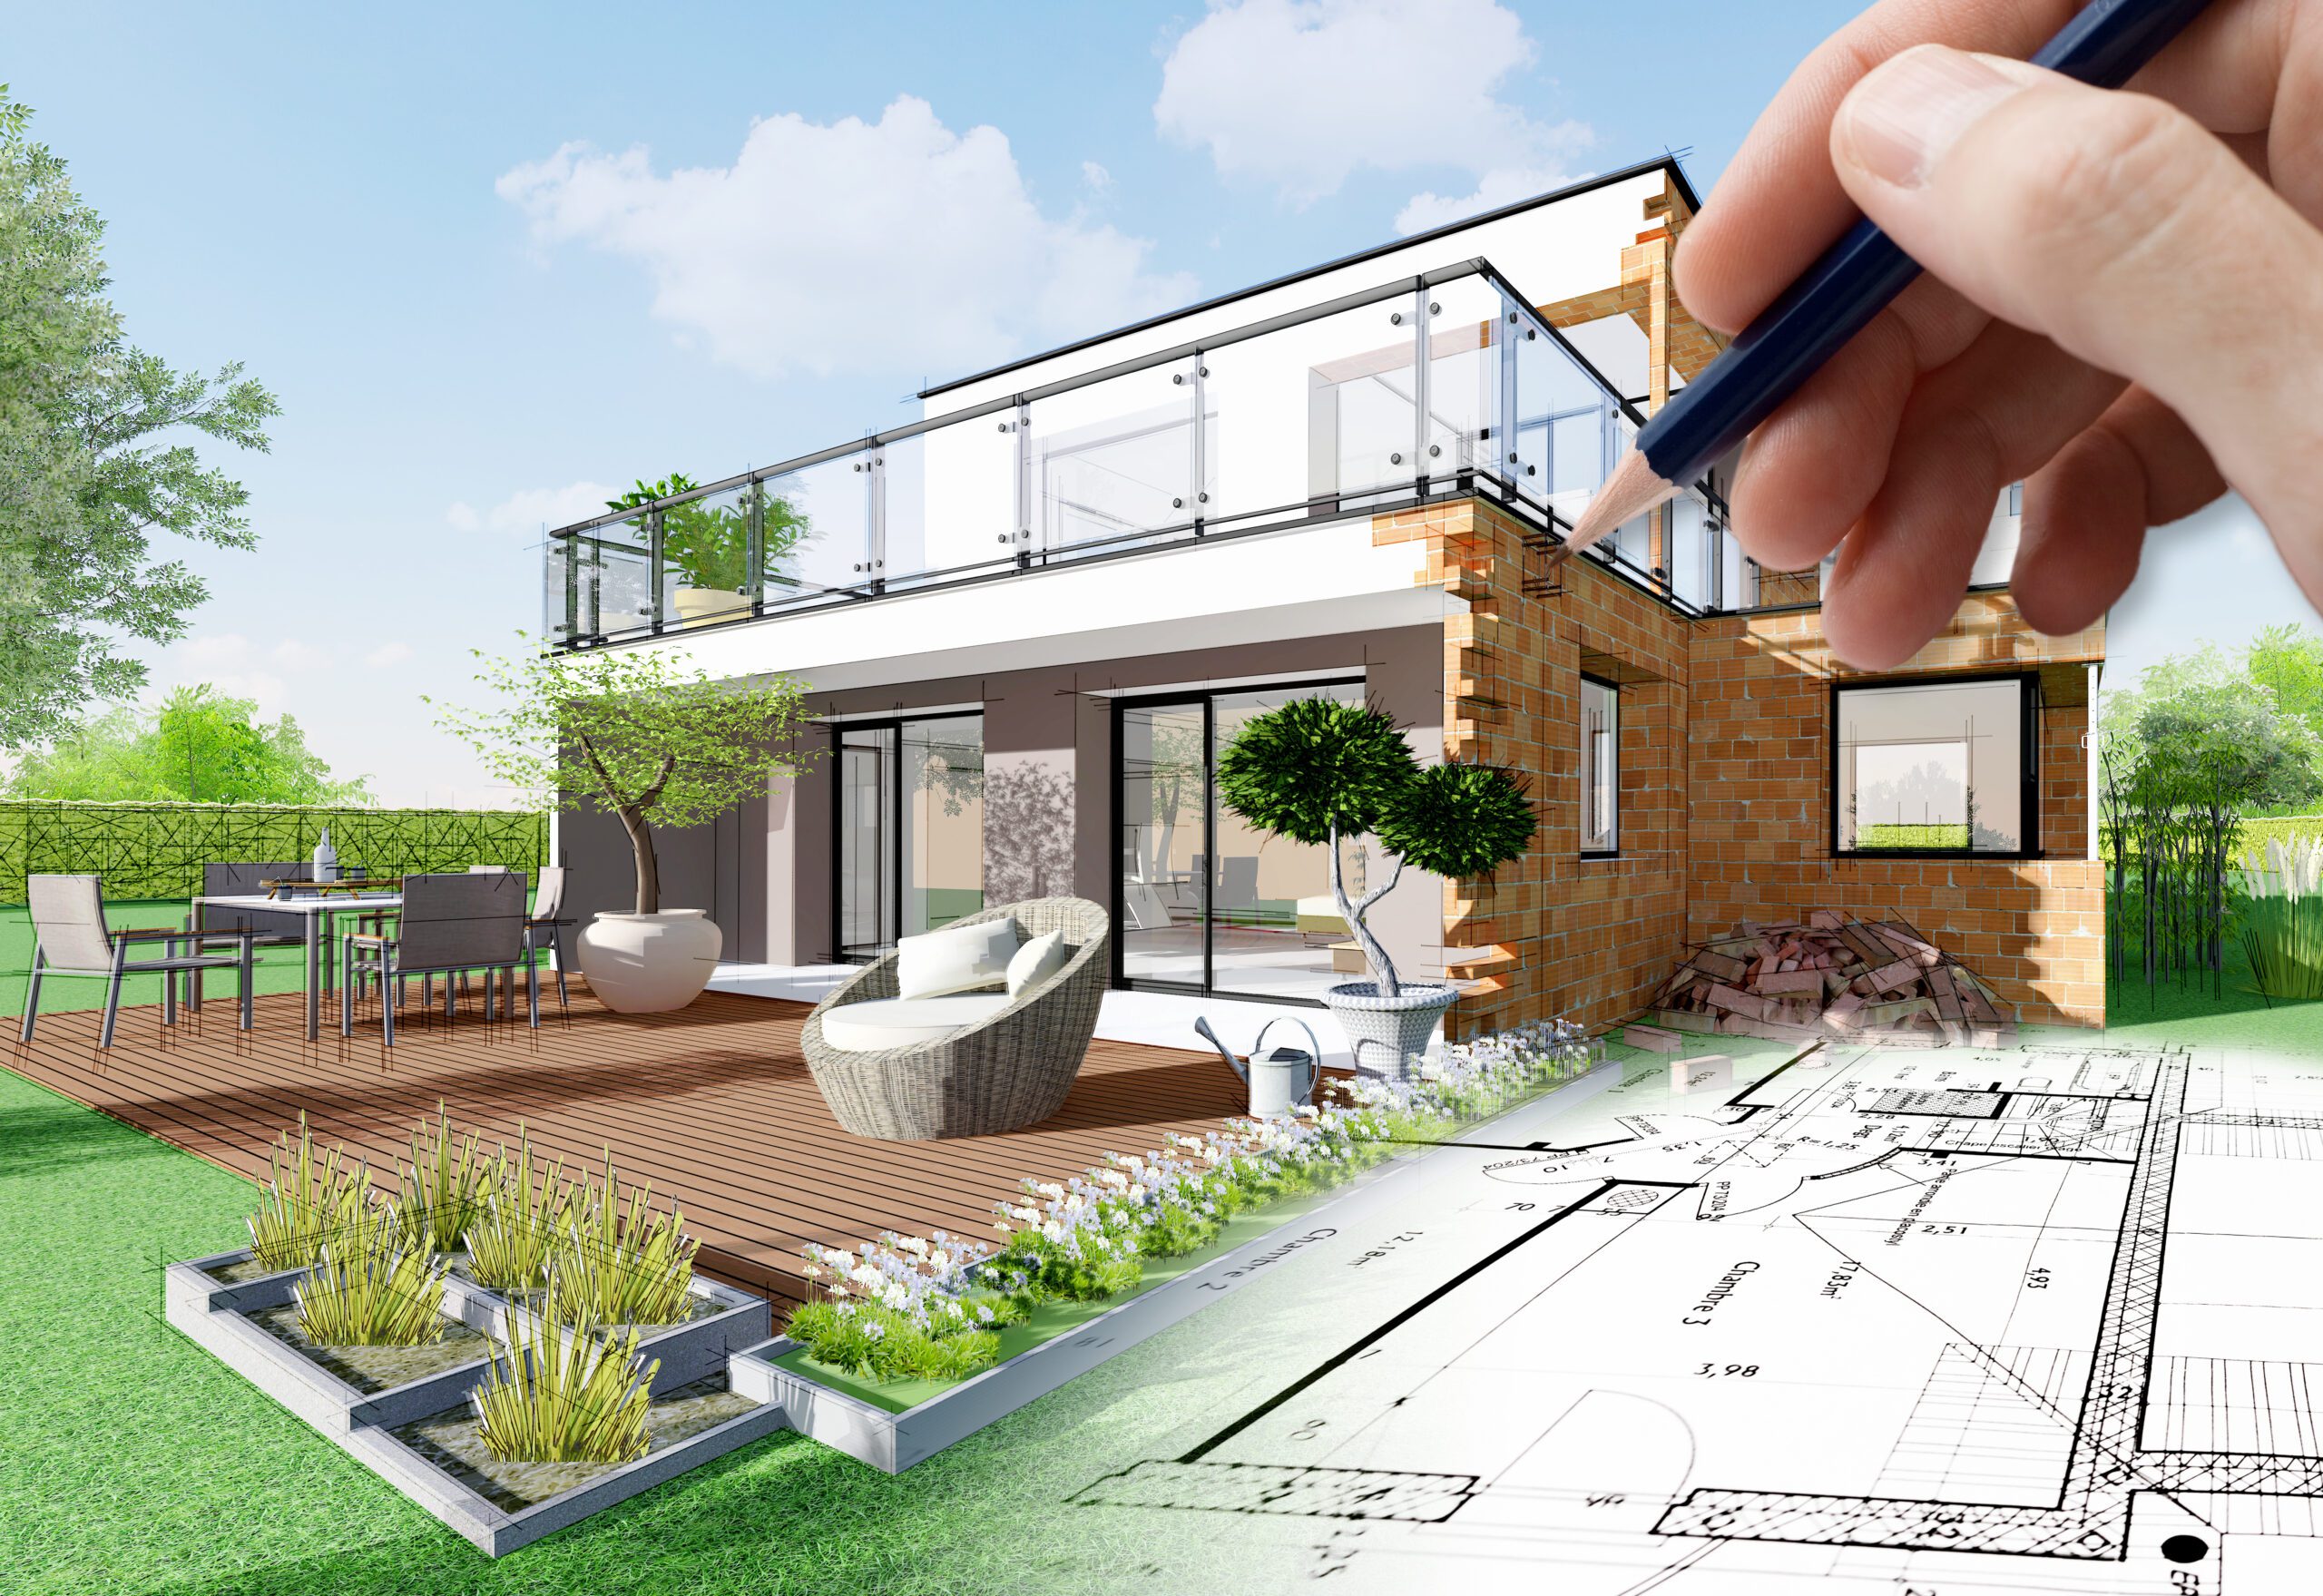 Custom homes, custom home design, smart home, outdoor living, energy efficient